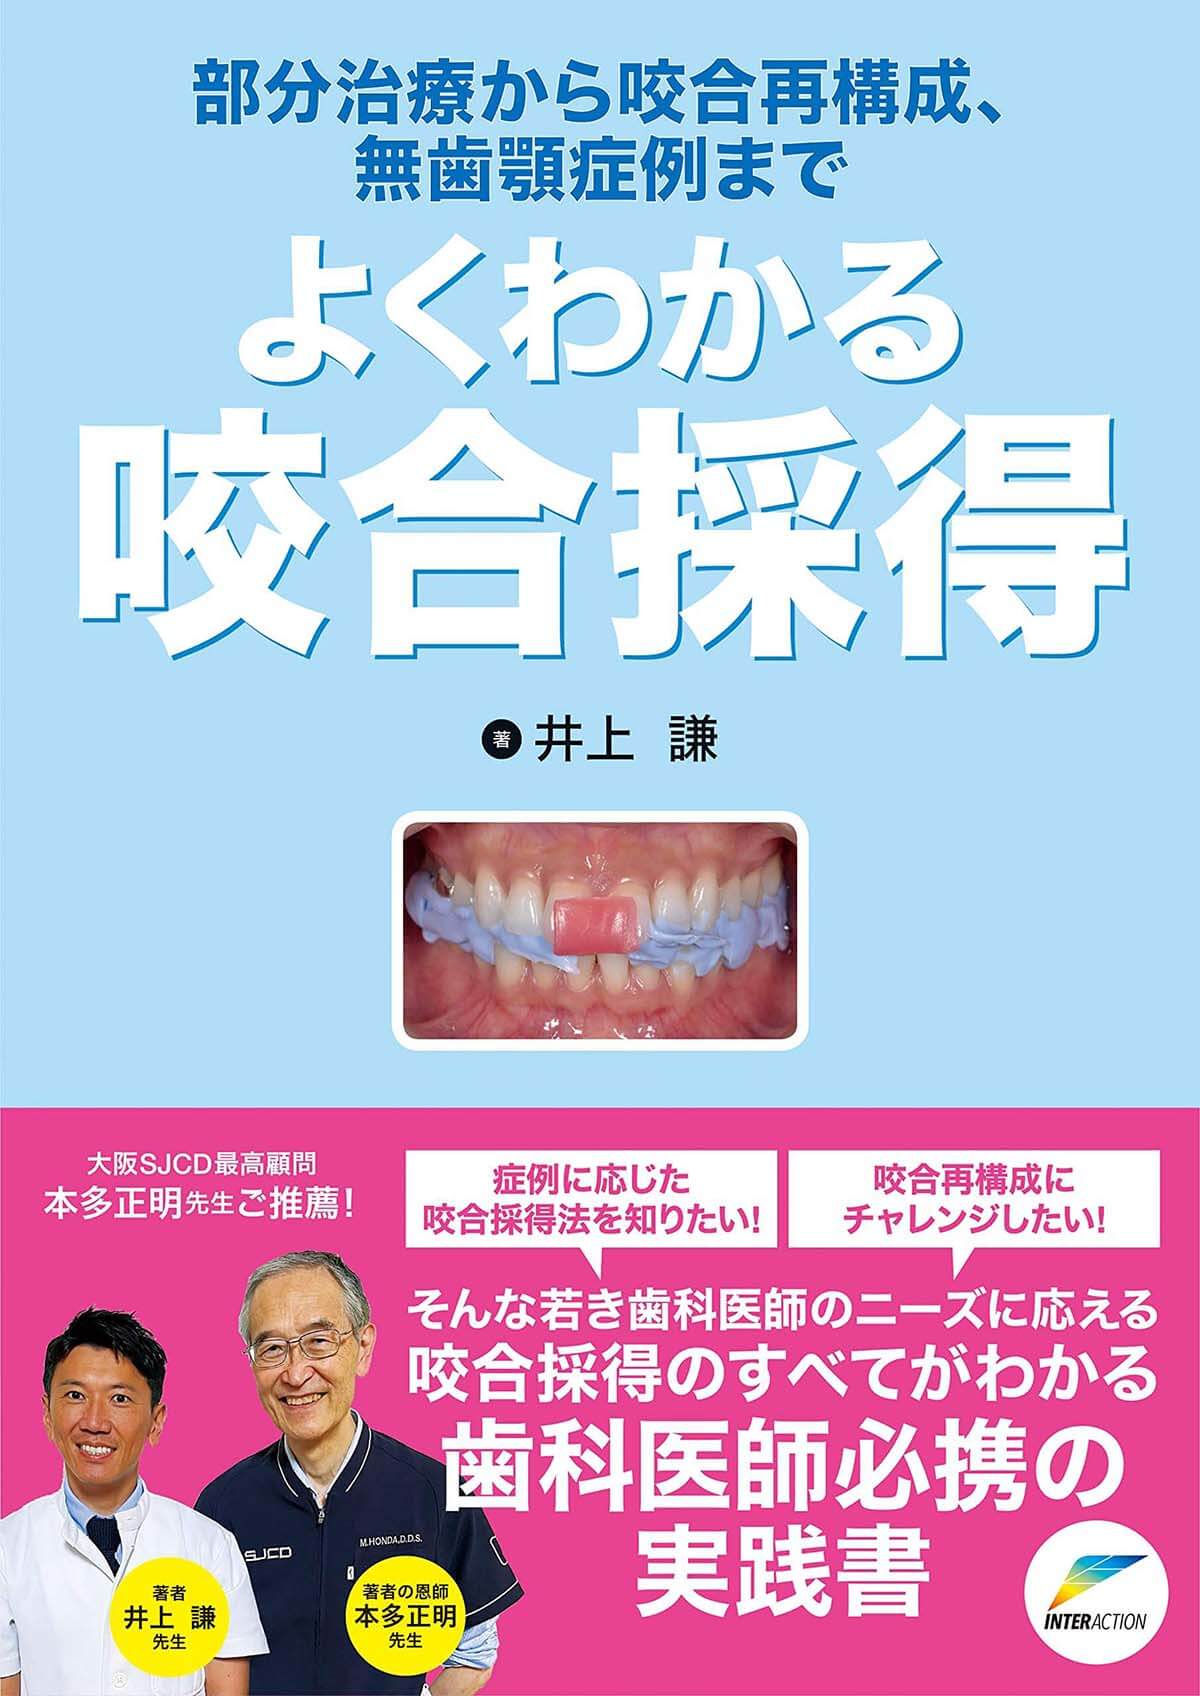 よくわかる咬合採得: 部分治療から咬合再構成、無歯顎症例まで